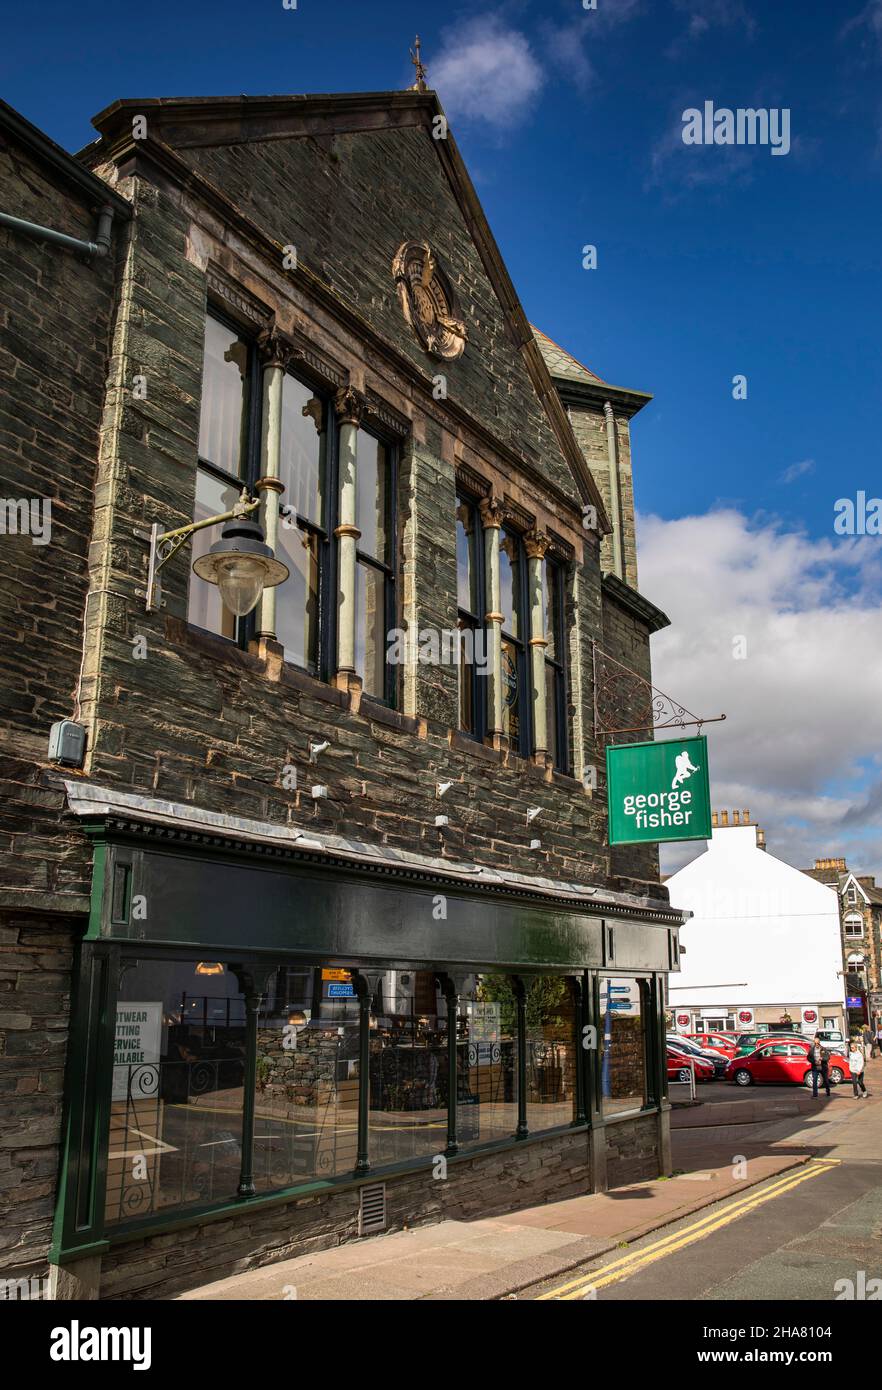 Großbritannien, Cumbria, Allerdale, Keswick, Lake Road, George Fisher Outdoor-Shop in Henry Maysons viktorianischen Fotografen Räumlichkeiten Stockfoto